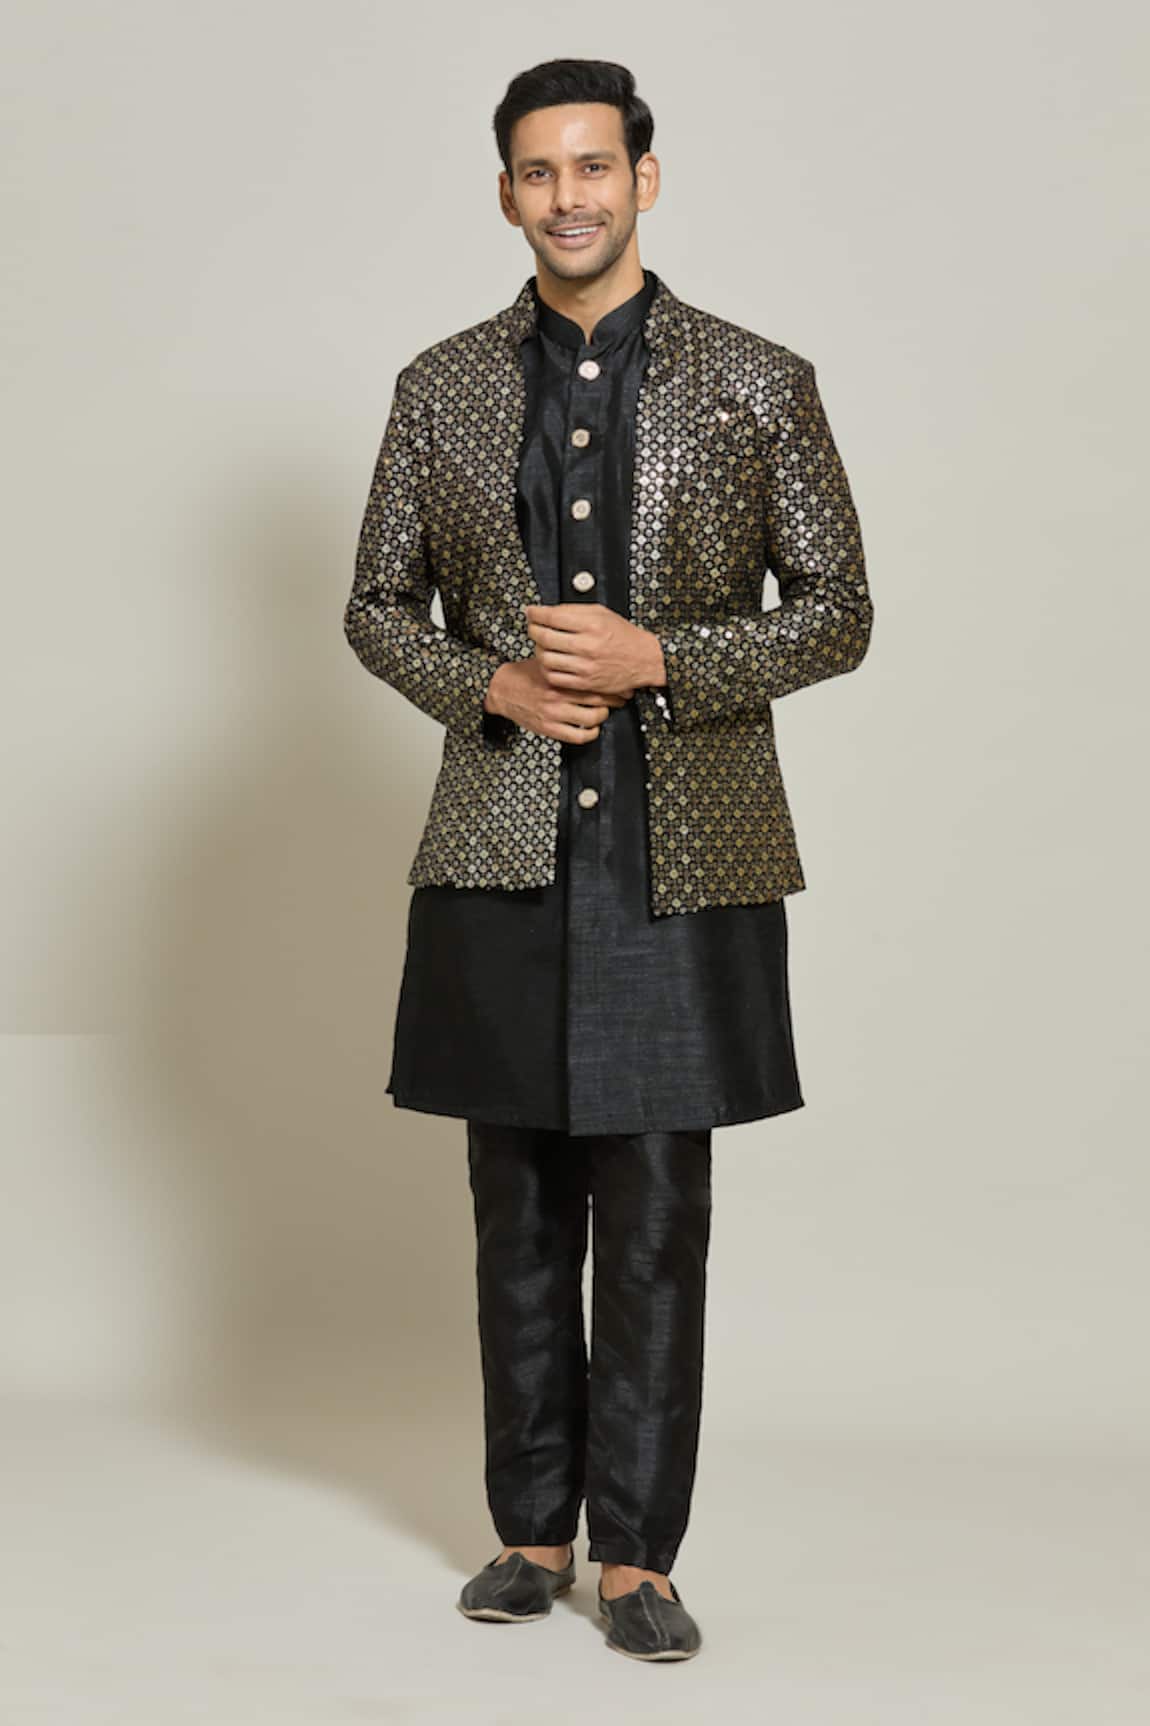 Aryavir Malhotra Sequin Embroidered Jacket Pant Set